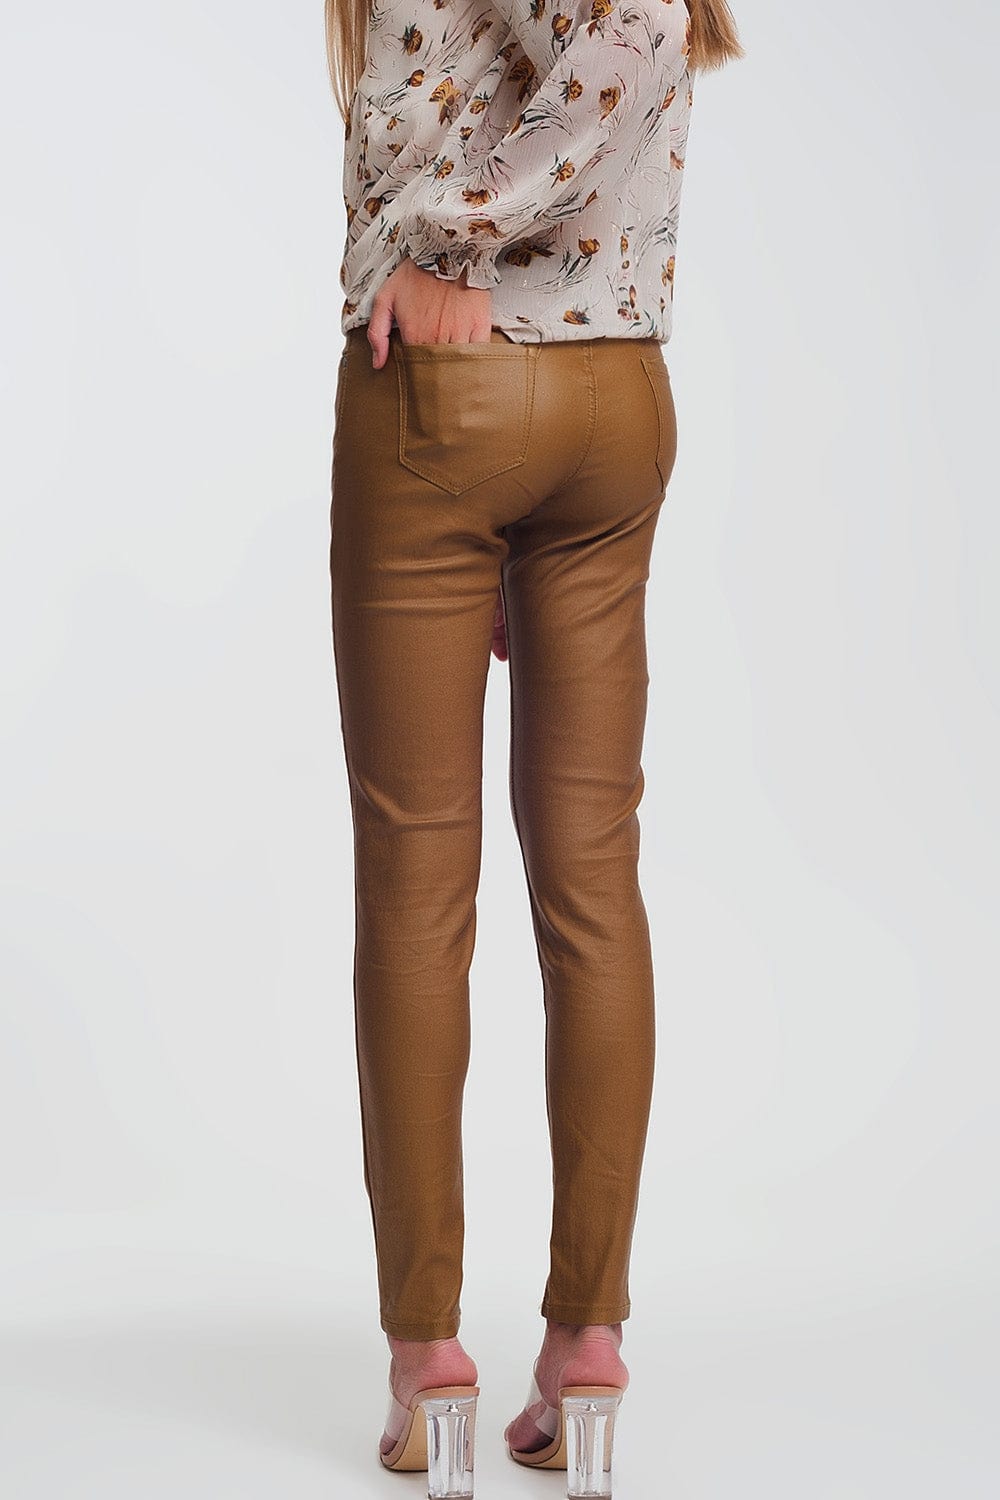 ASOS DESIGN Tall mansy skinny split side trouser in camel | ASOS